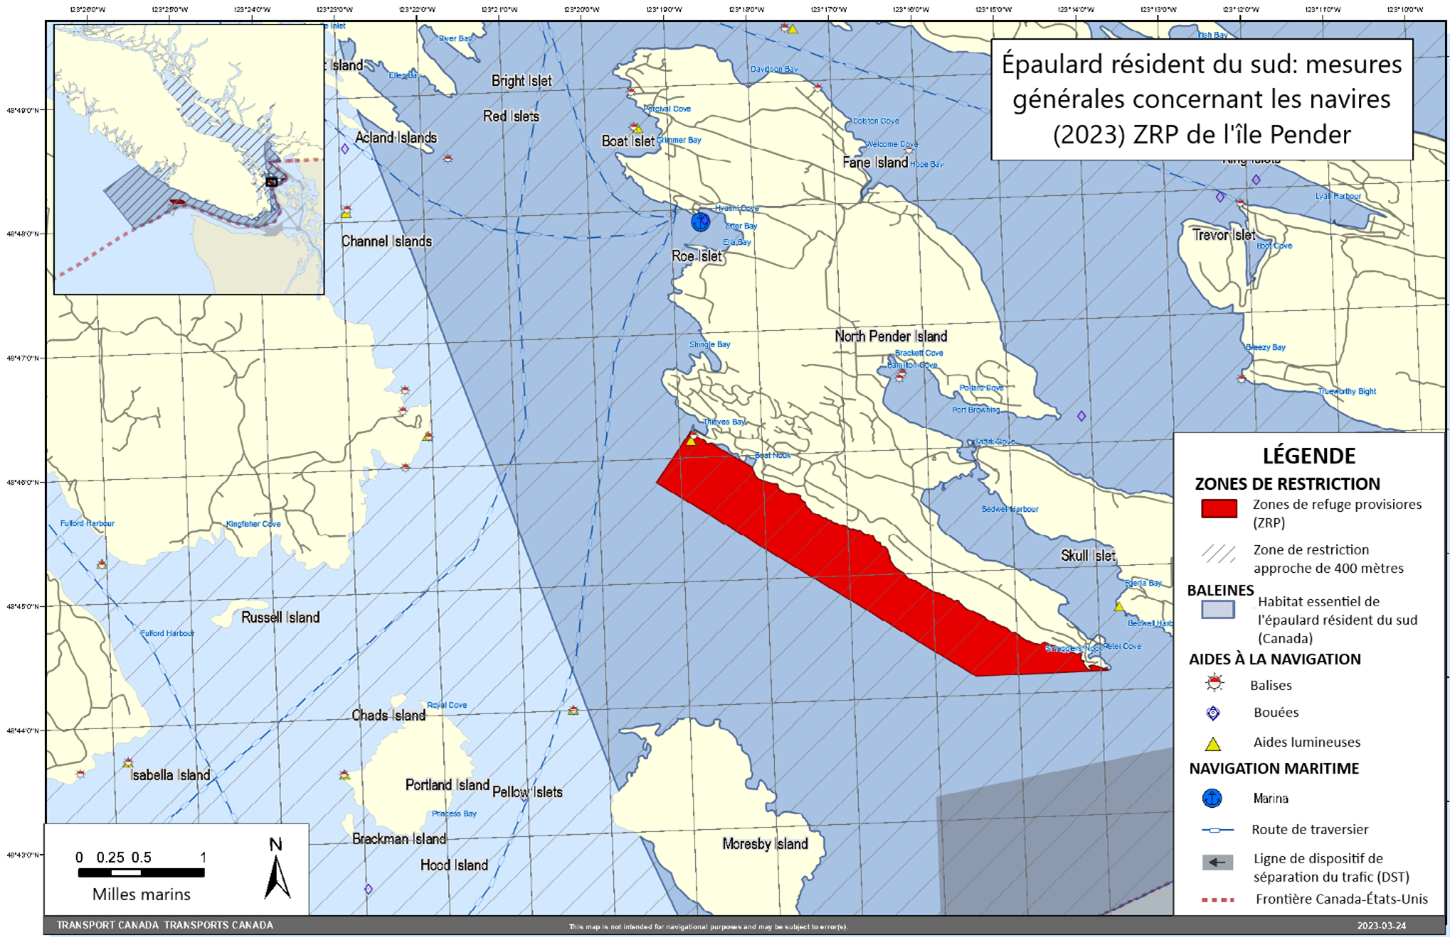 Carte rectangulaire grise, bleue et jaune. L'ile Pender, 
                     qui est une zone de refuge provisoire, est illustrée en rouge. 
                     Ceci fait partie des mesures générales concernant les navires 
                     dans le dossier des épaulards résidents du sud.